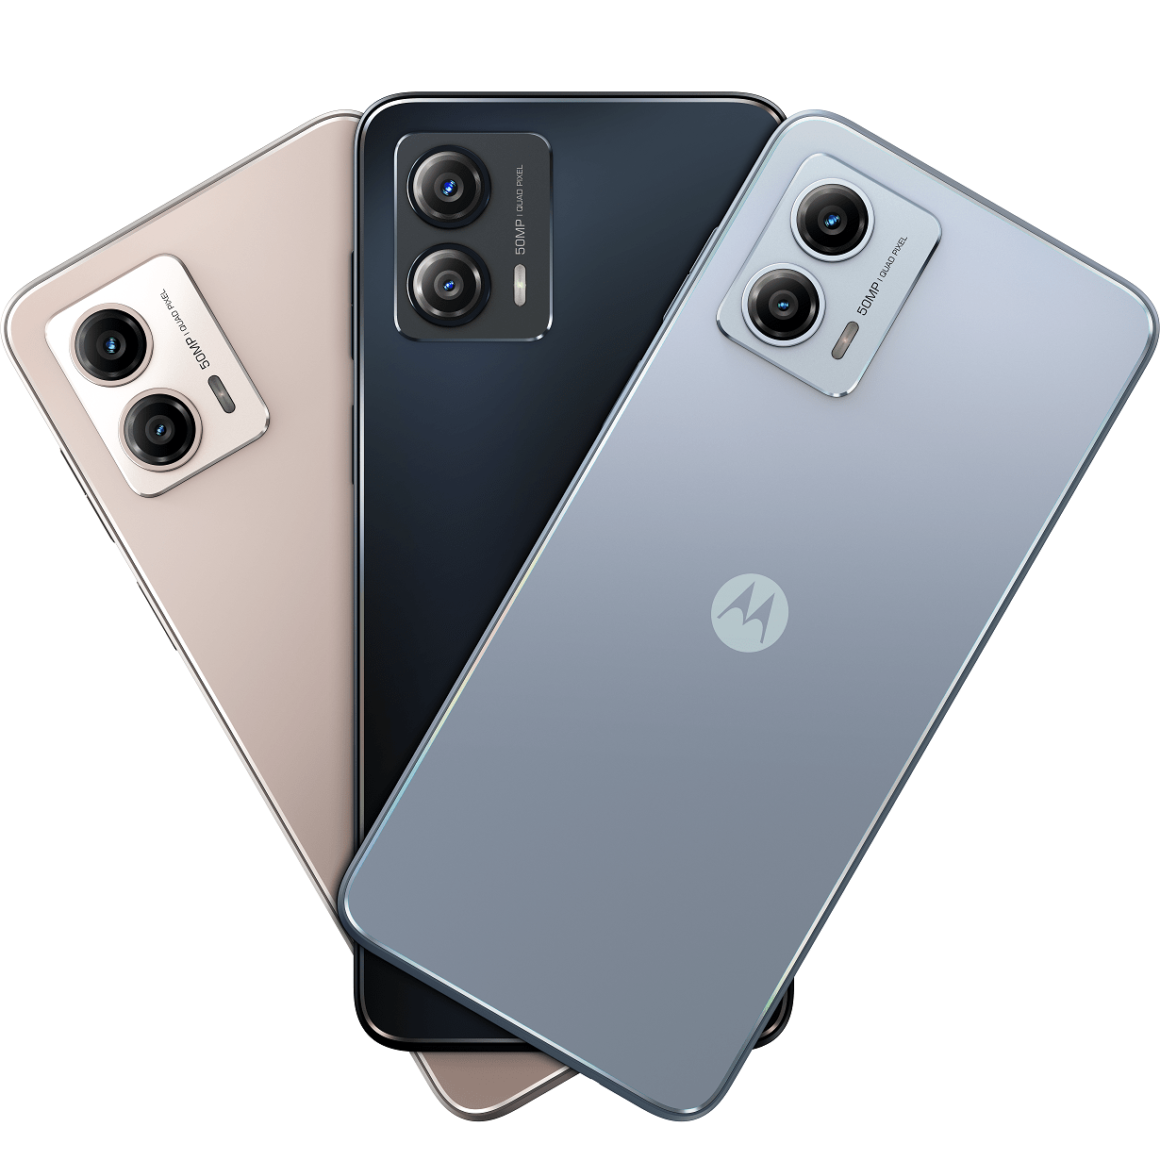 Motorola wbija z 4 mocnymi modelami g13, g23, g53 5G, g73 5G